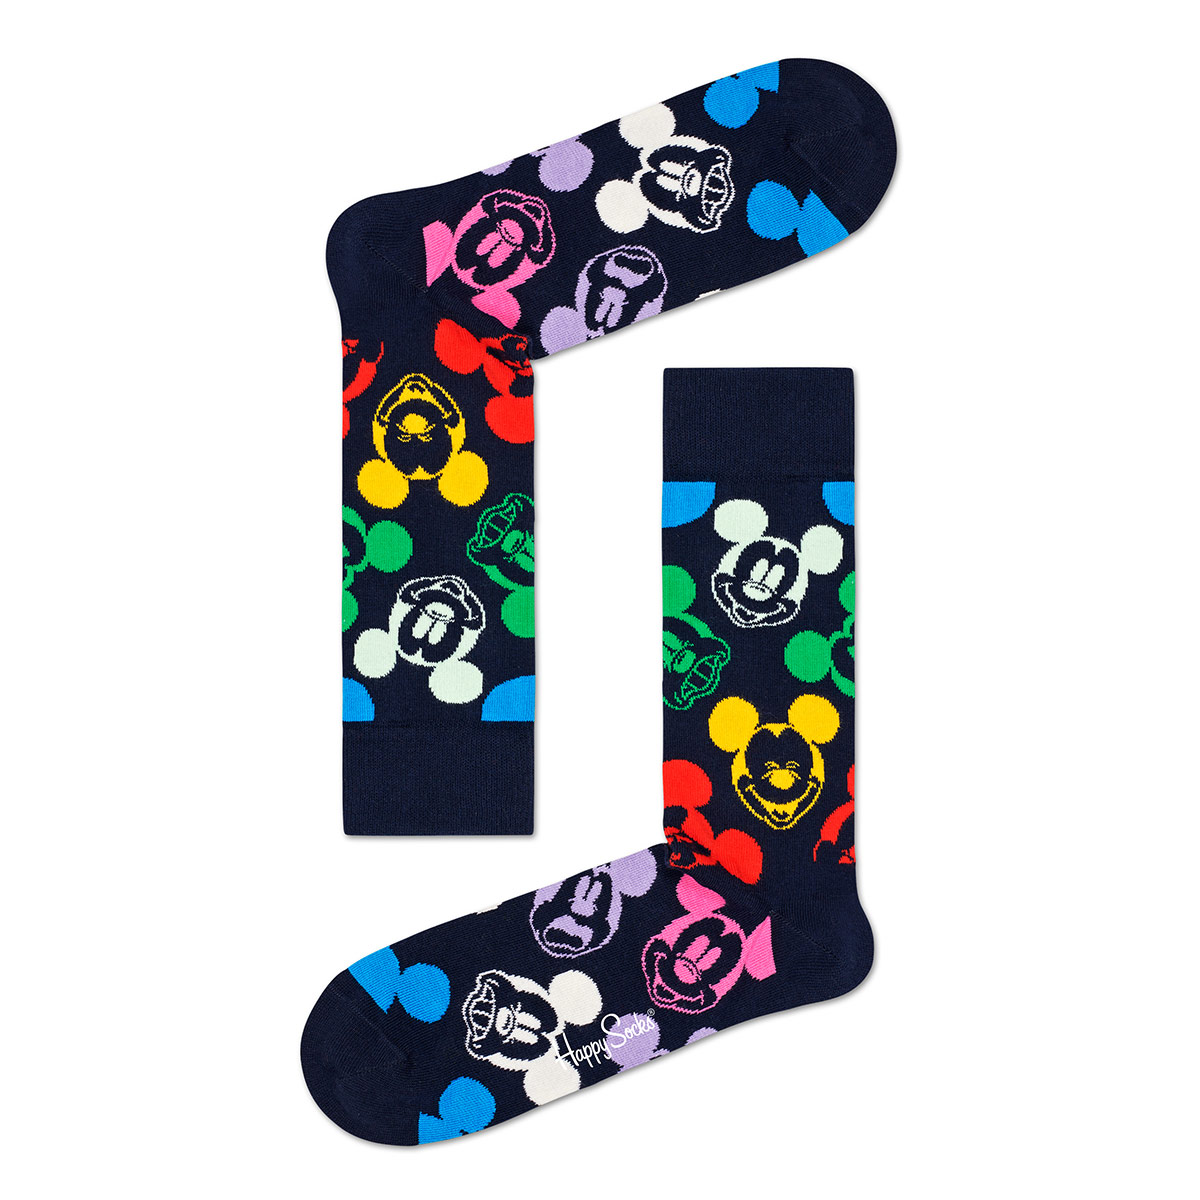 本物 セール 44 Off ハッピーソックス Happy Socks Disney ディズニー Colorful Character カラフル キャラクター クルー丈 ソックス 靴下 メンズ 男性 紳士 プレゼント 贈答 ギフト バレンタイン Bagochile Cl